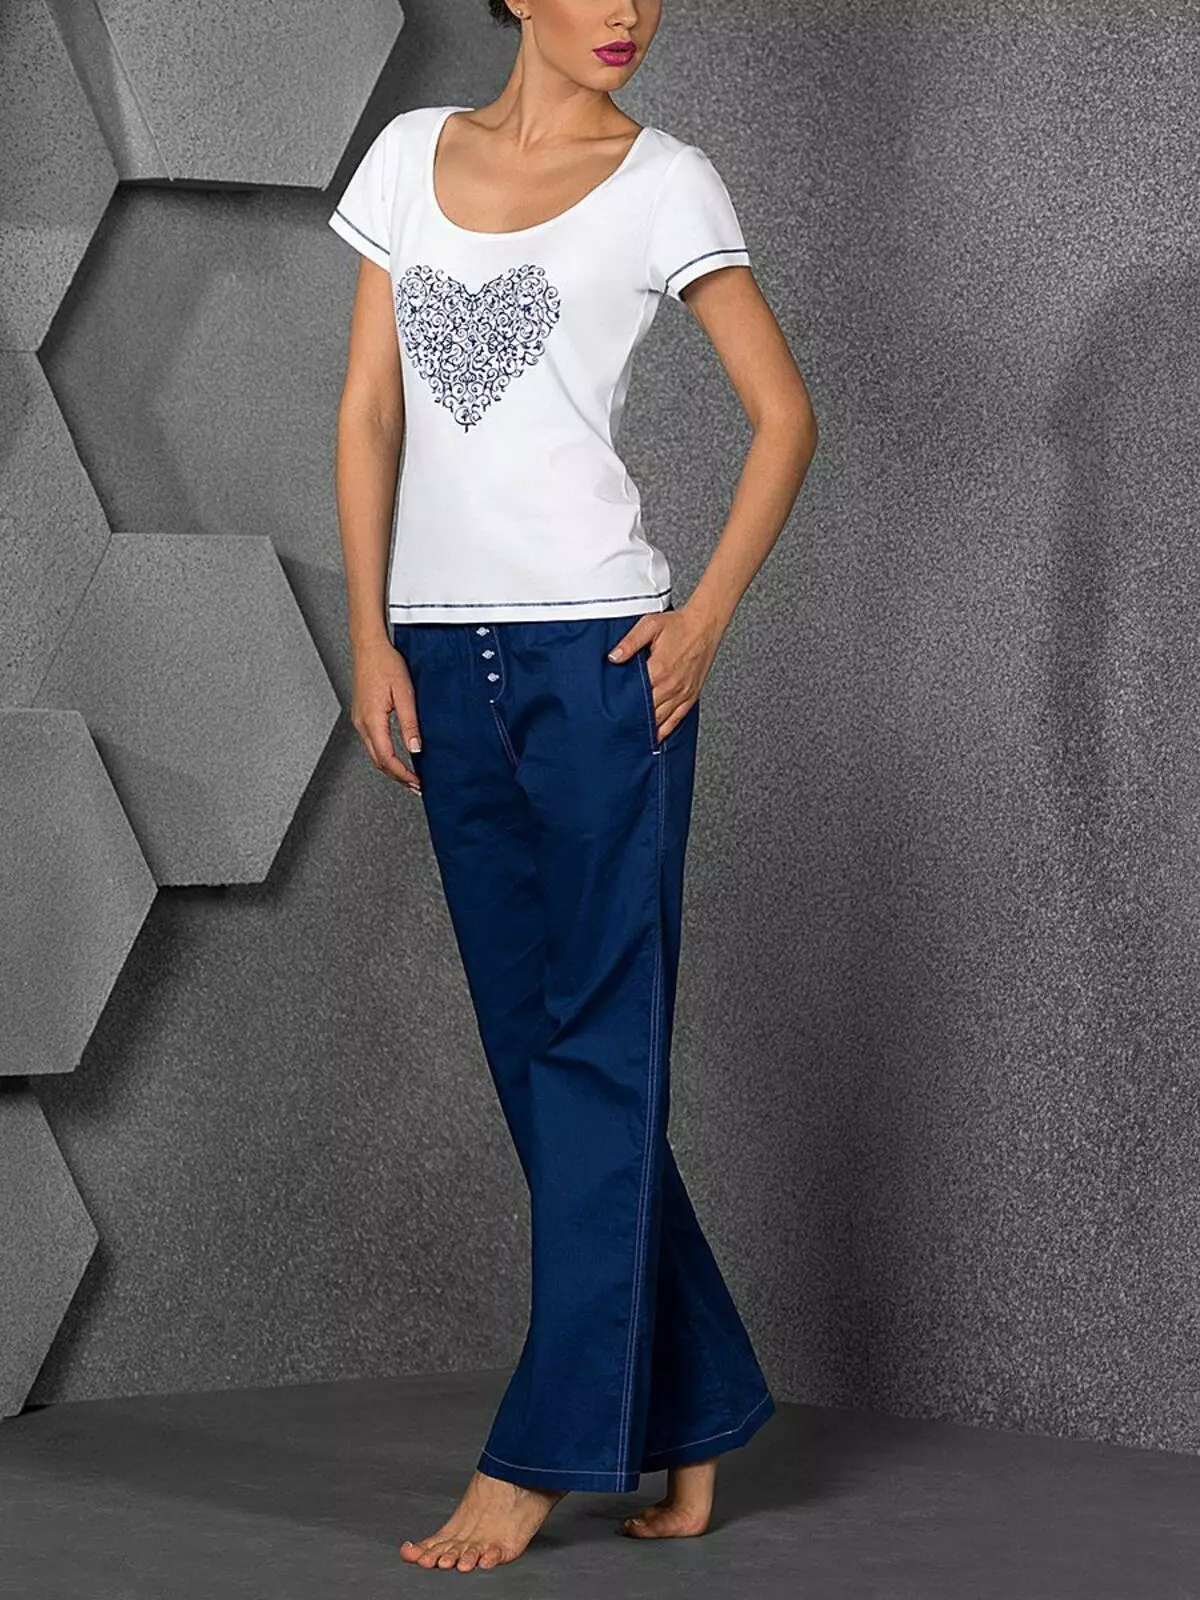 Fashion Pants 2021: Frouljusstylde modellen, moade trends 917_271